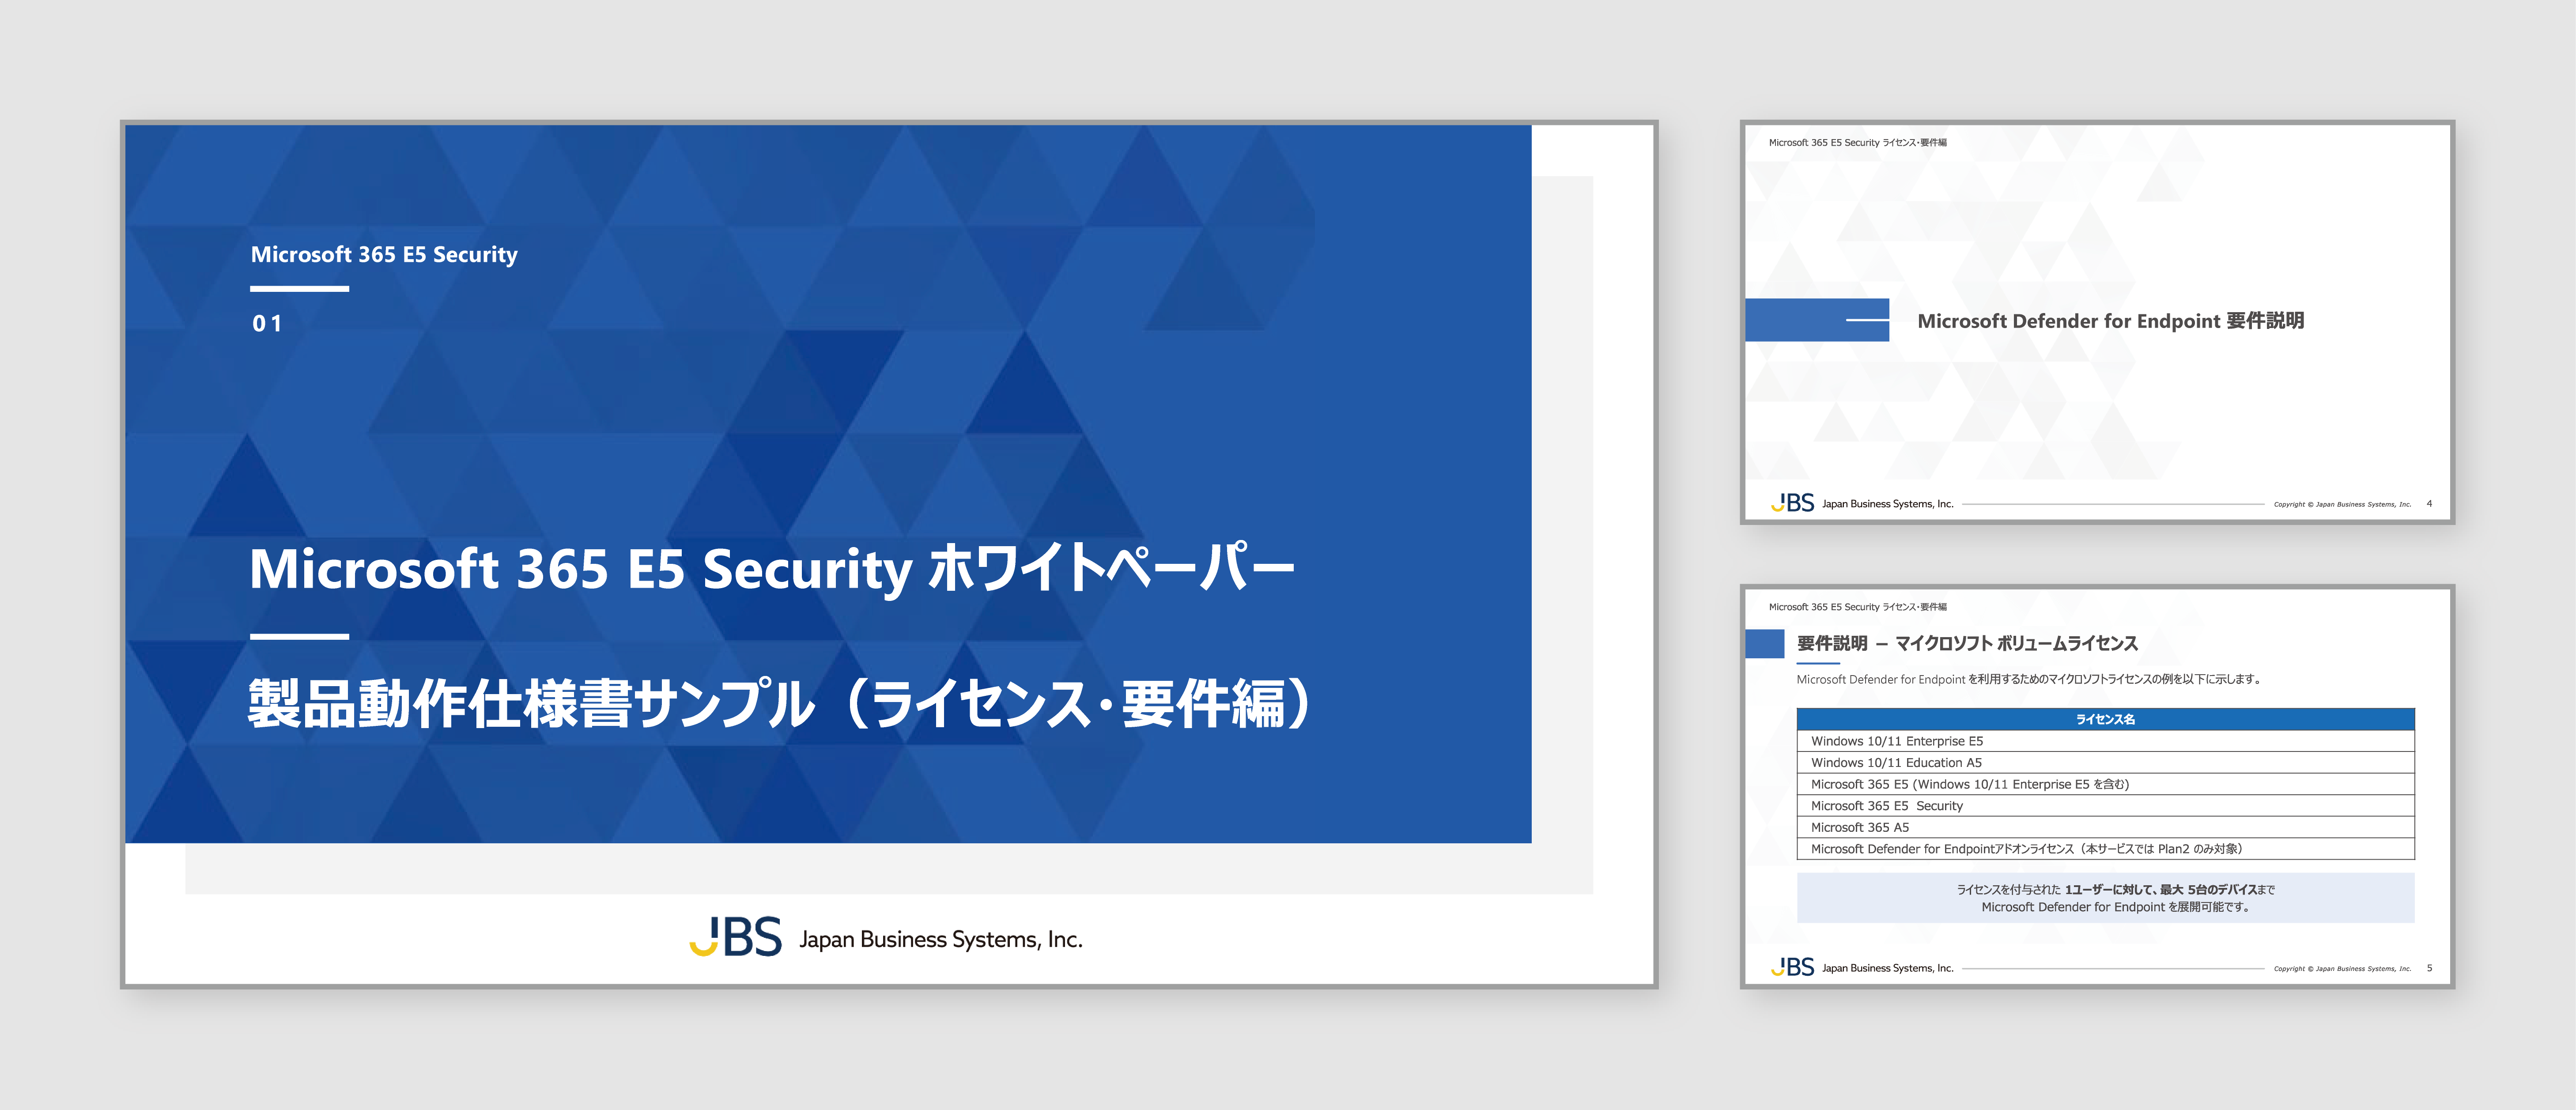 Microsoft 365 E5 Security ライセンス・前提条件編